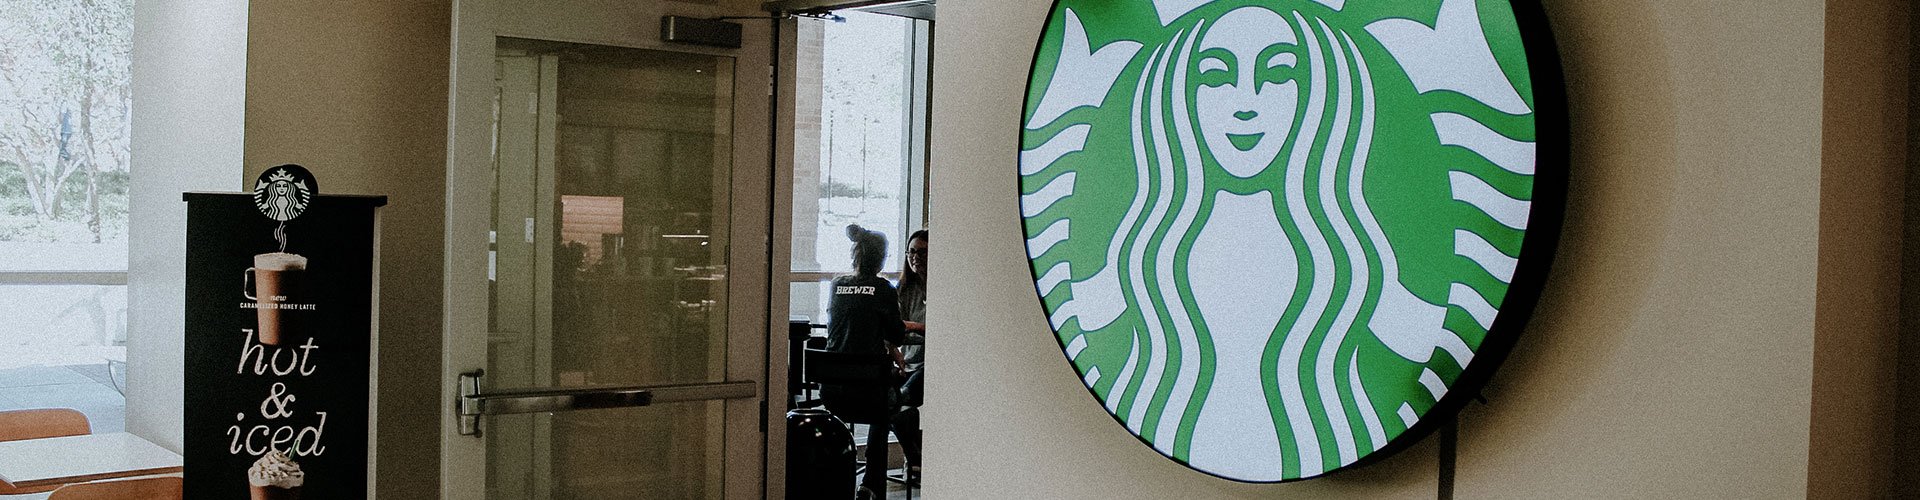 Starbucks in the UNT Union